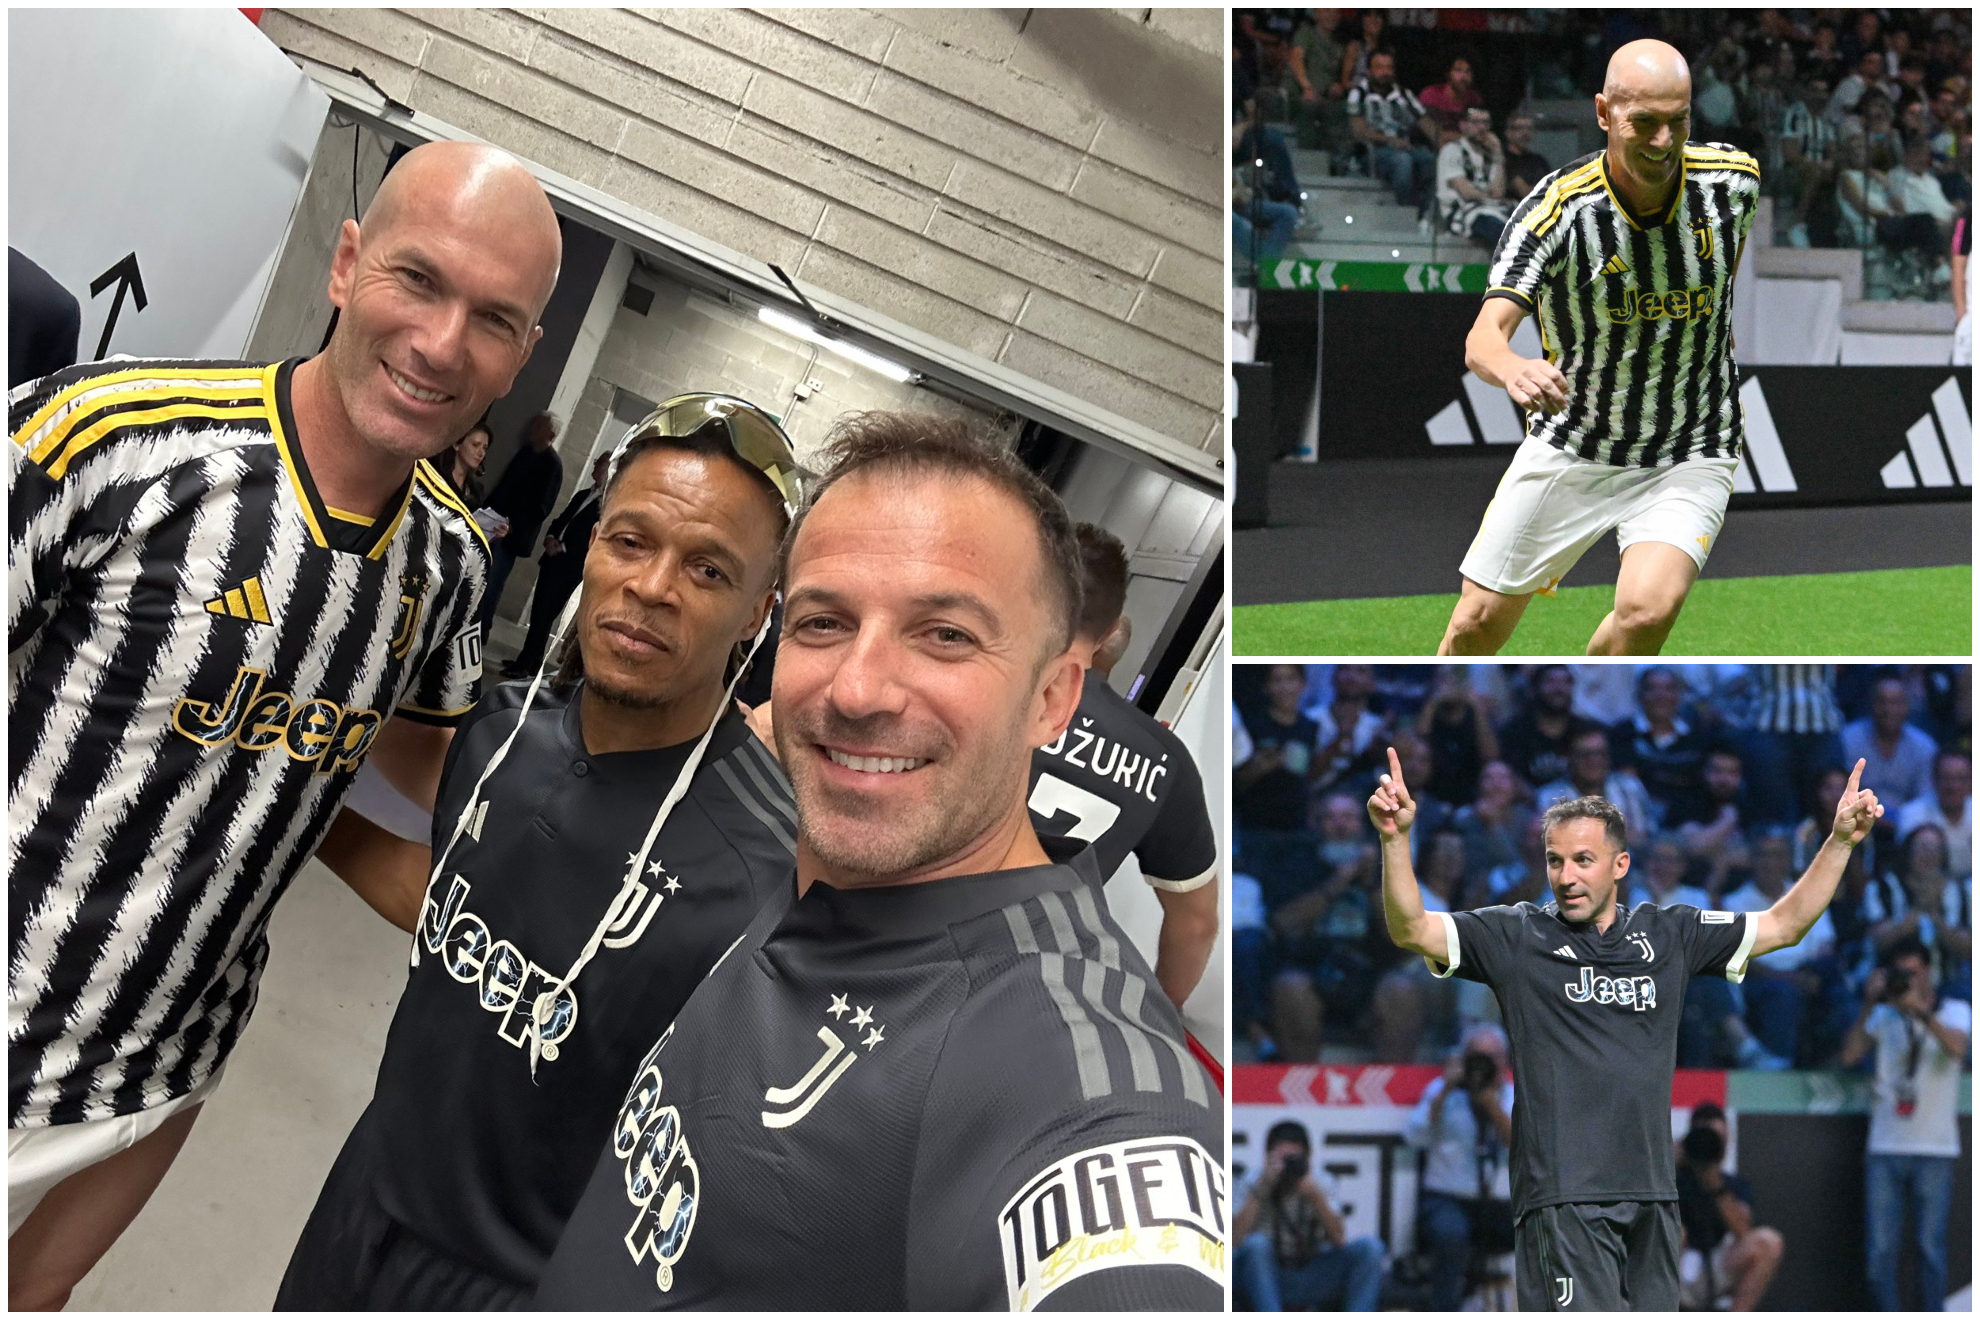 Fotos: Juventus / EFE.